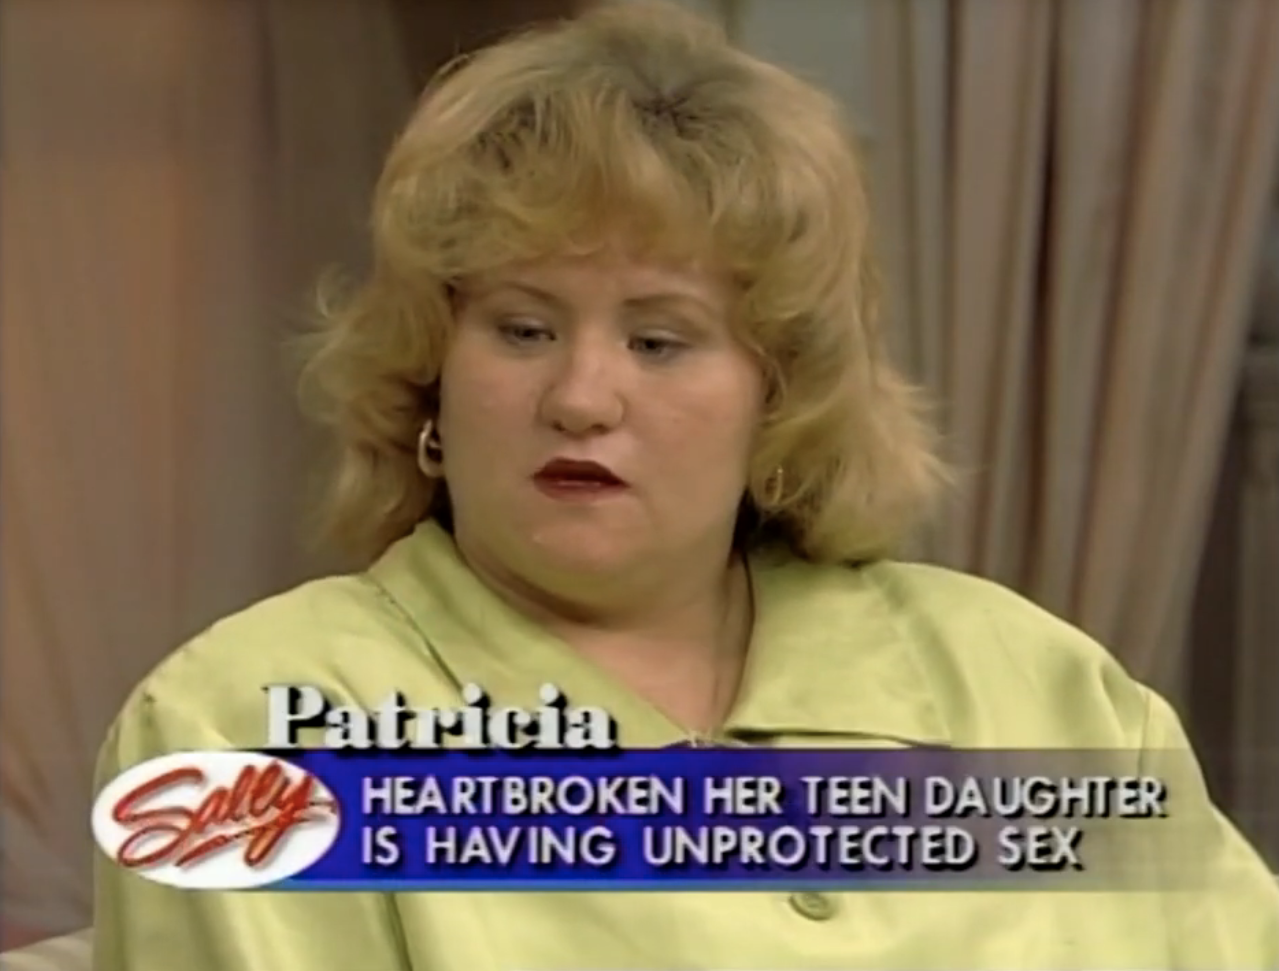 &quot;Heartbroken her teen daughter is having unprotected sex&quot;